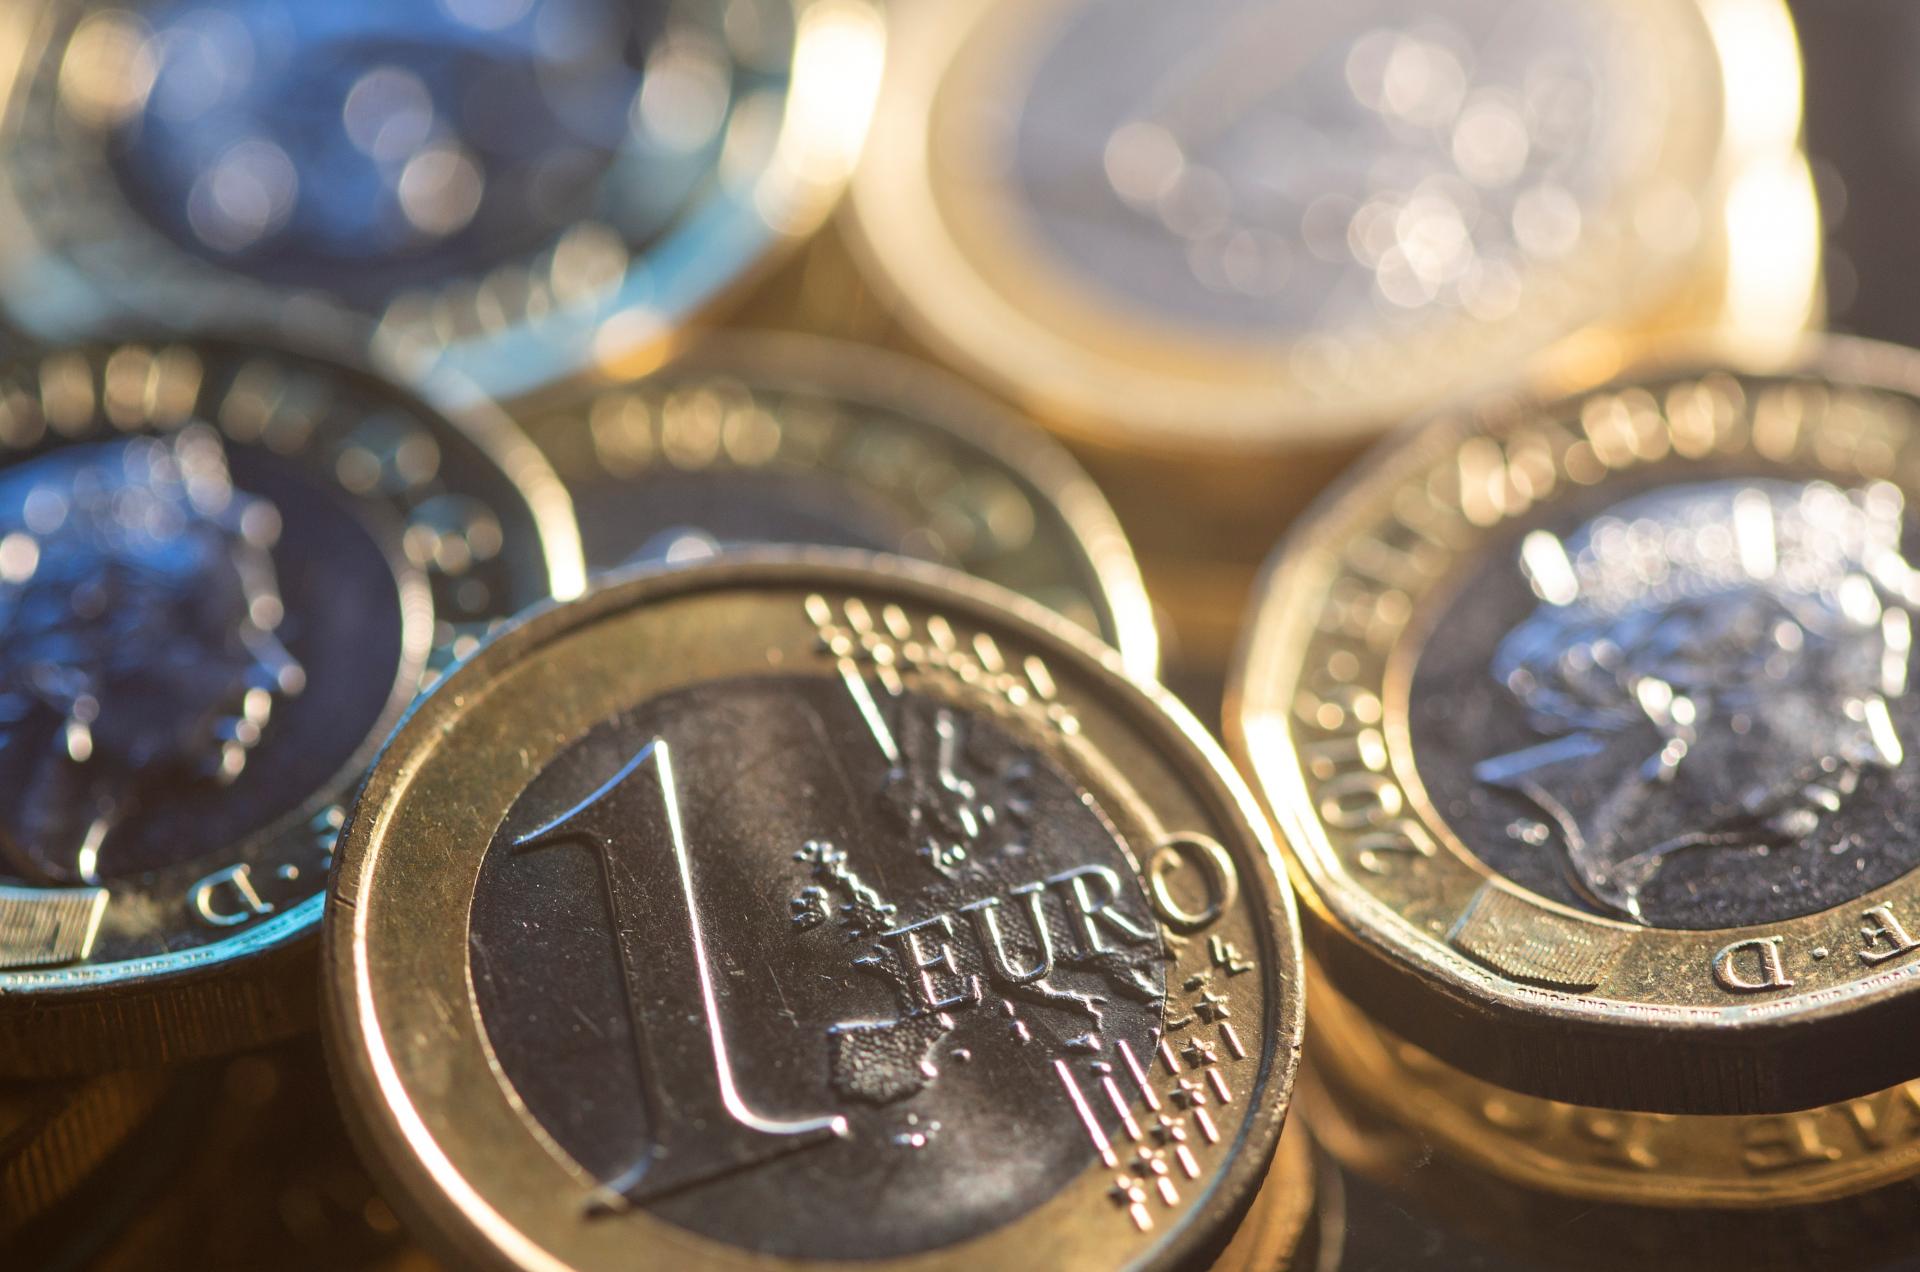 Euromince budú zrejme prvýkrát vyobrazovať svätcov, navrhlo ich Bulharsko